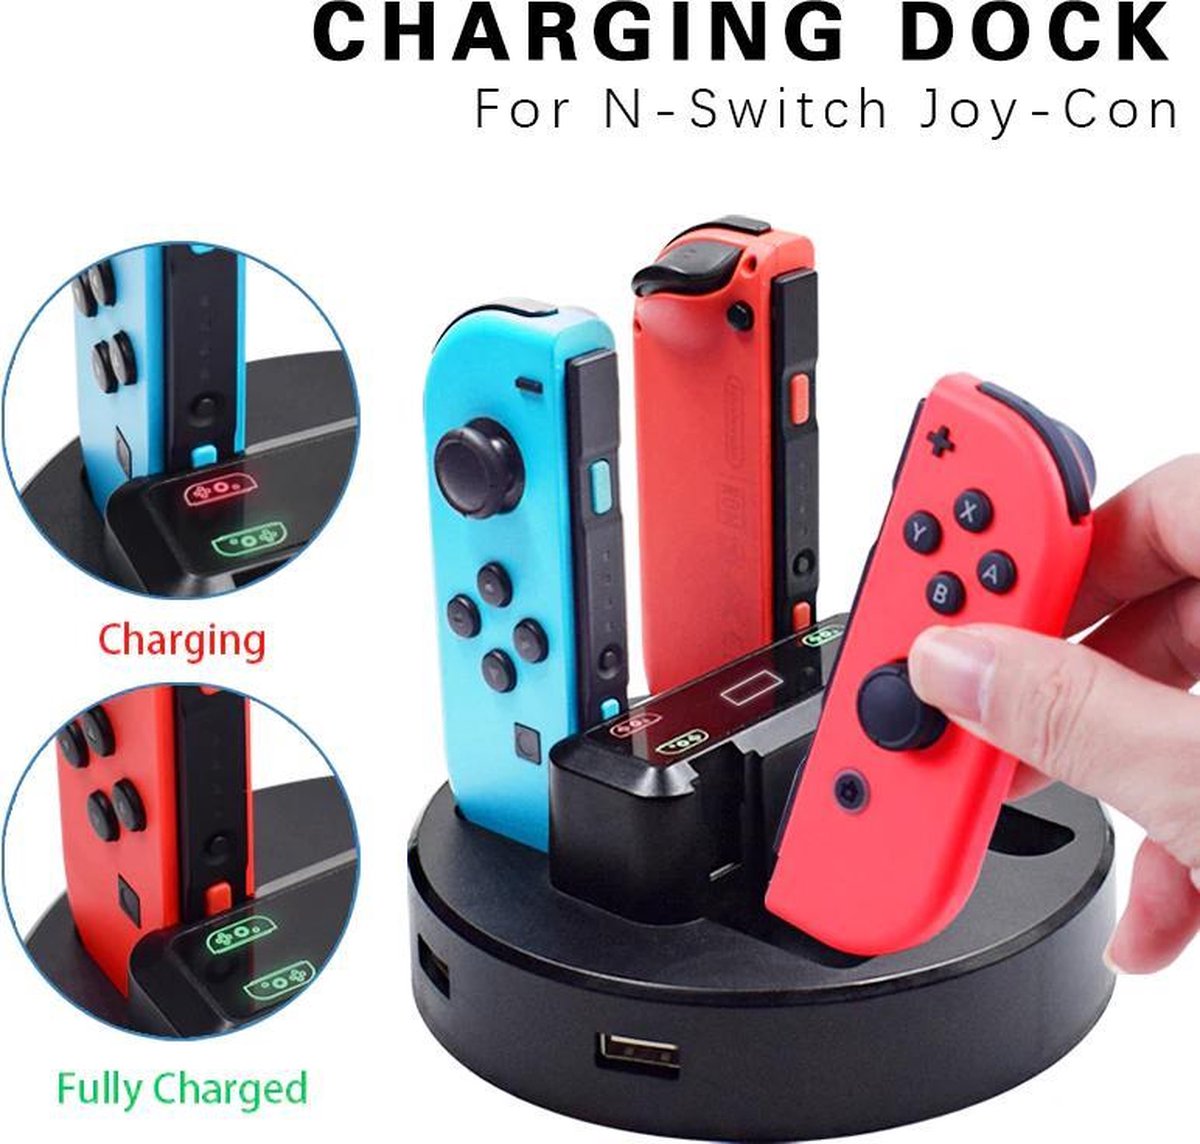 Rechtdoor hangen Marine Daily Goods - Nintendo Switch oplaad station - charging dock - Joy-Con controllers  opladen | bol.com